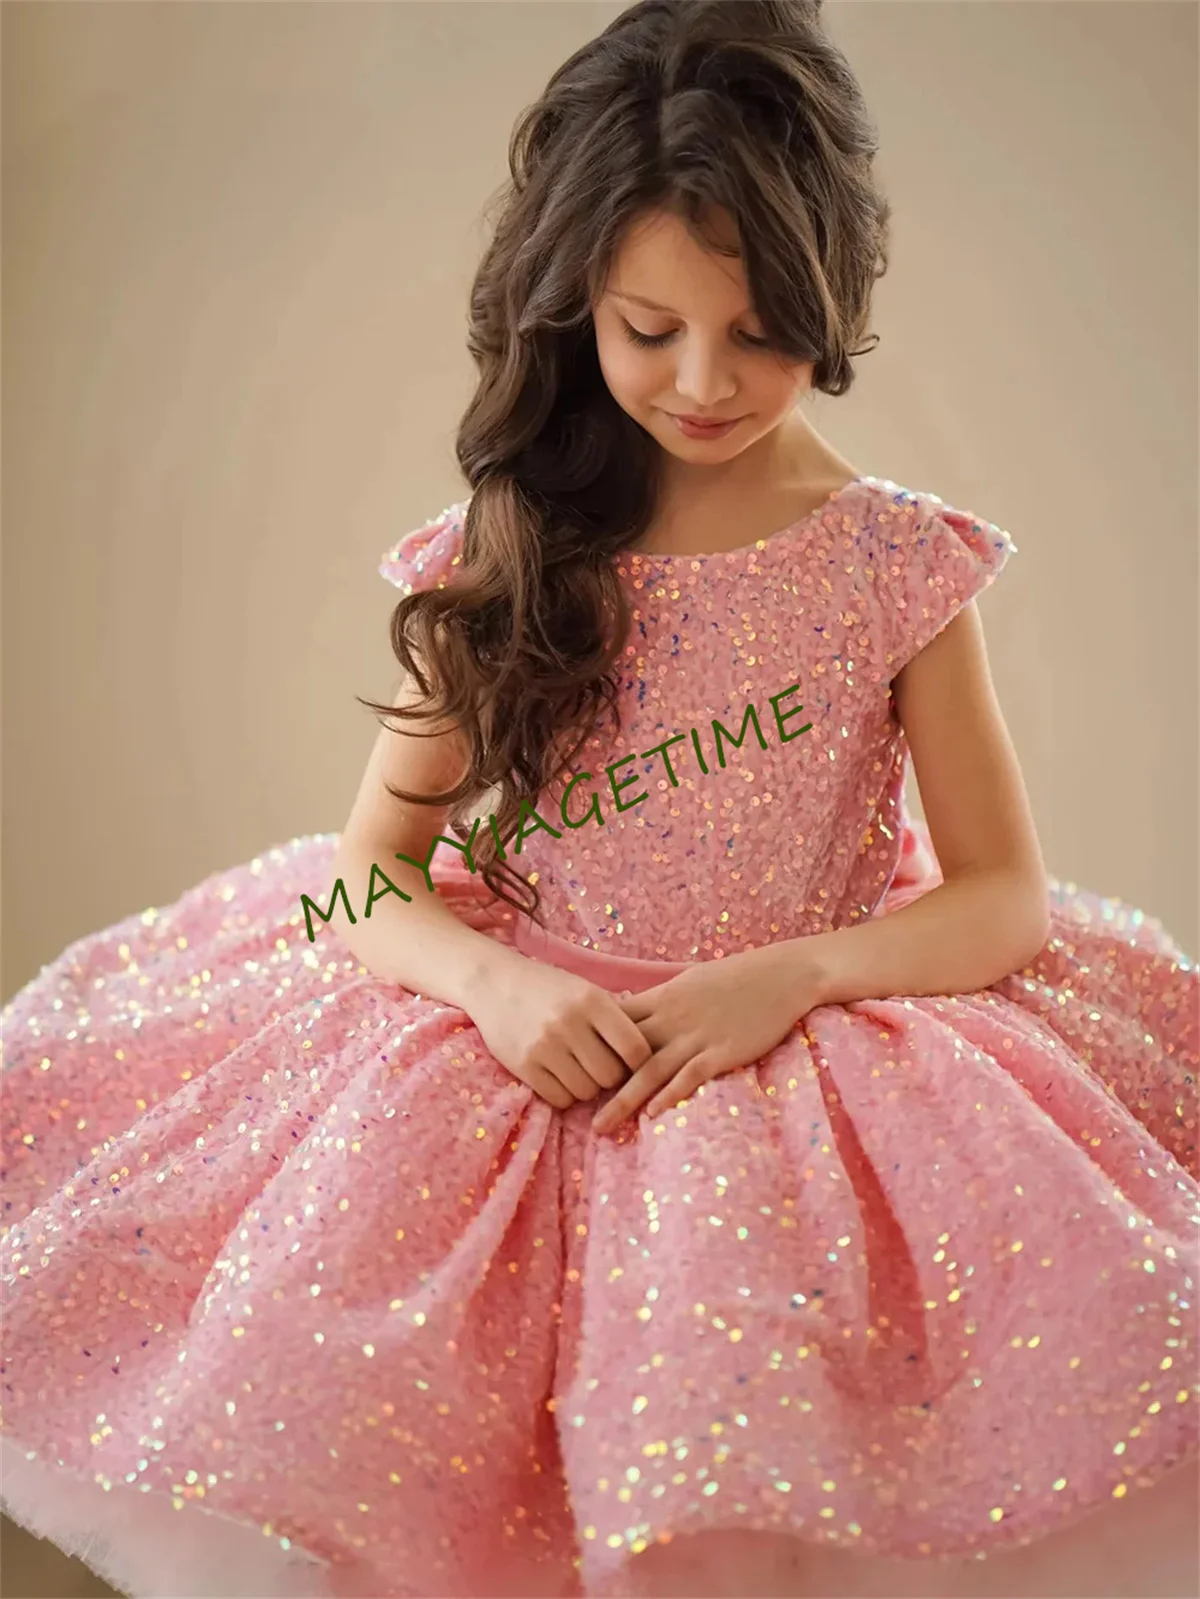 

Платье для девочки с блестками и цветами, розовое Пышное женское платье на Рождество, блестящее детское платье